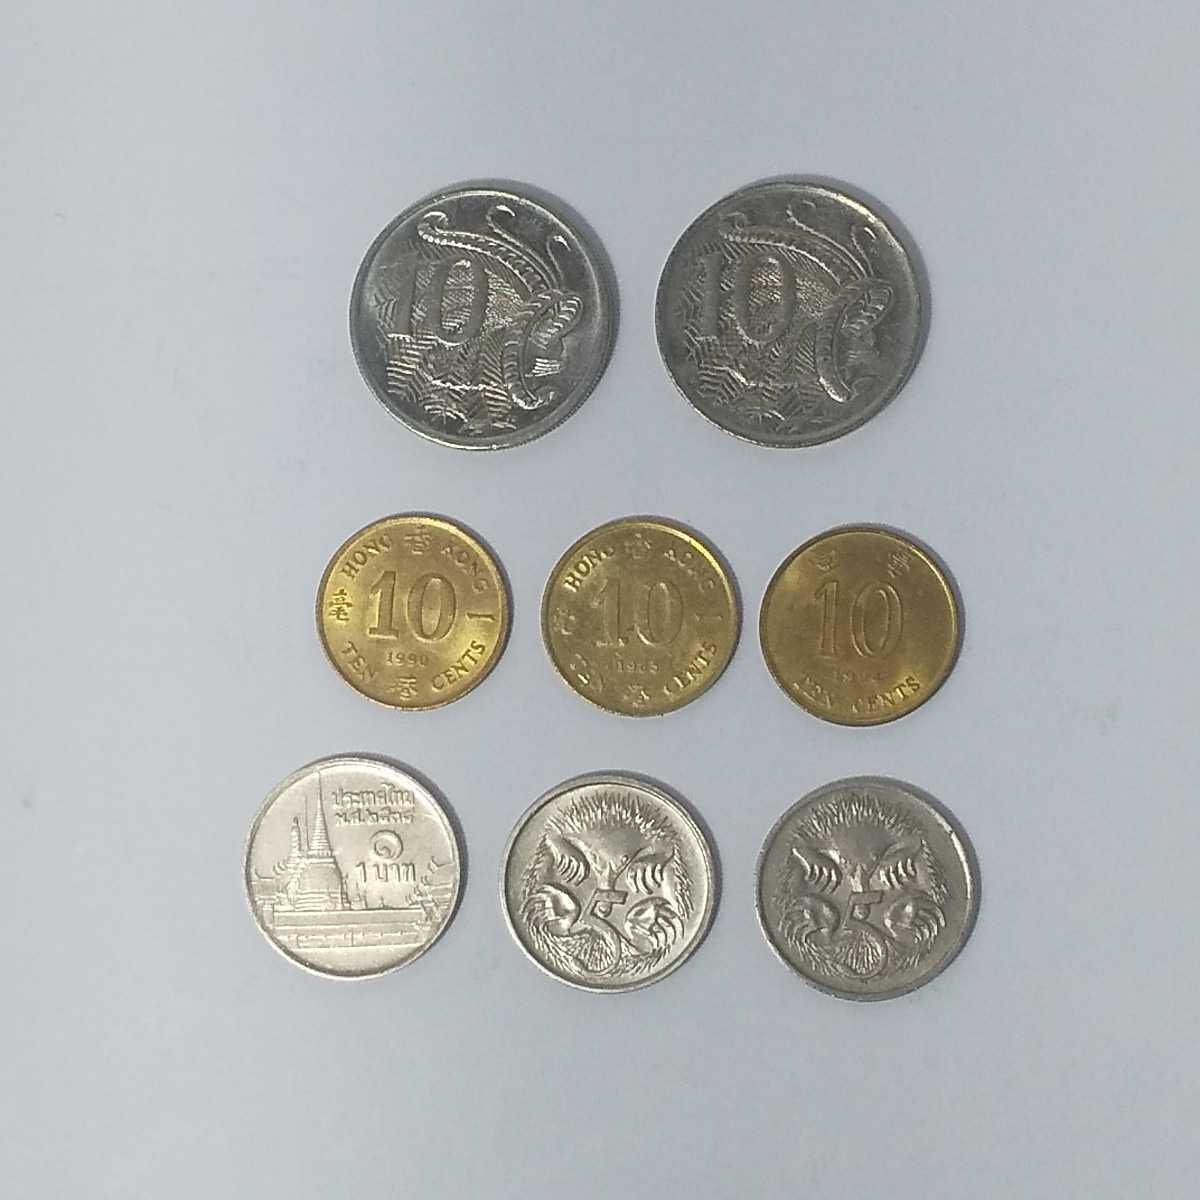  foreign coin coin 8 pieces set Australia 10 cent 5 cent Hong Kong 10 cent Thai 1 bar tsu through .